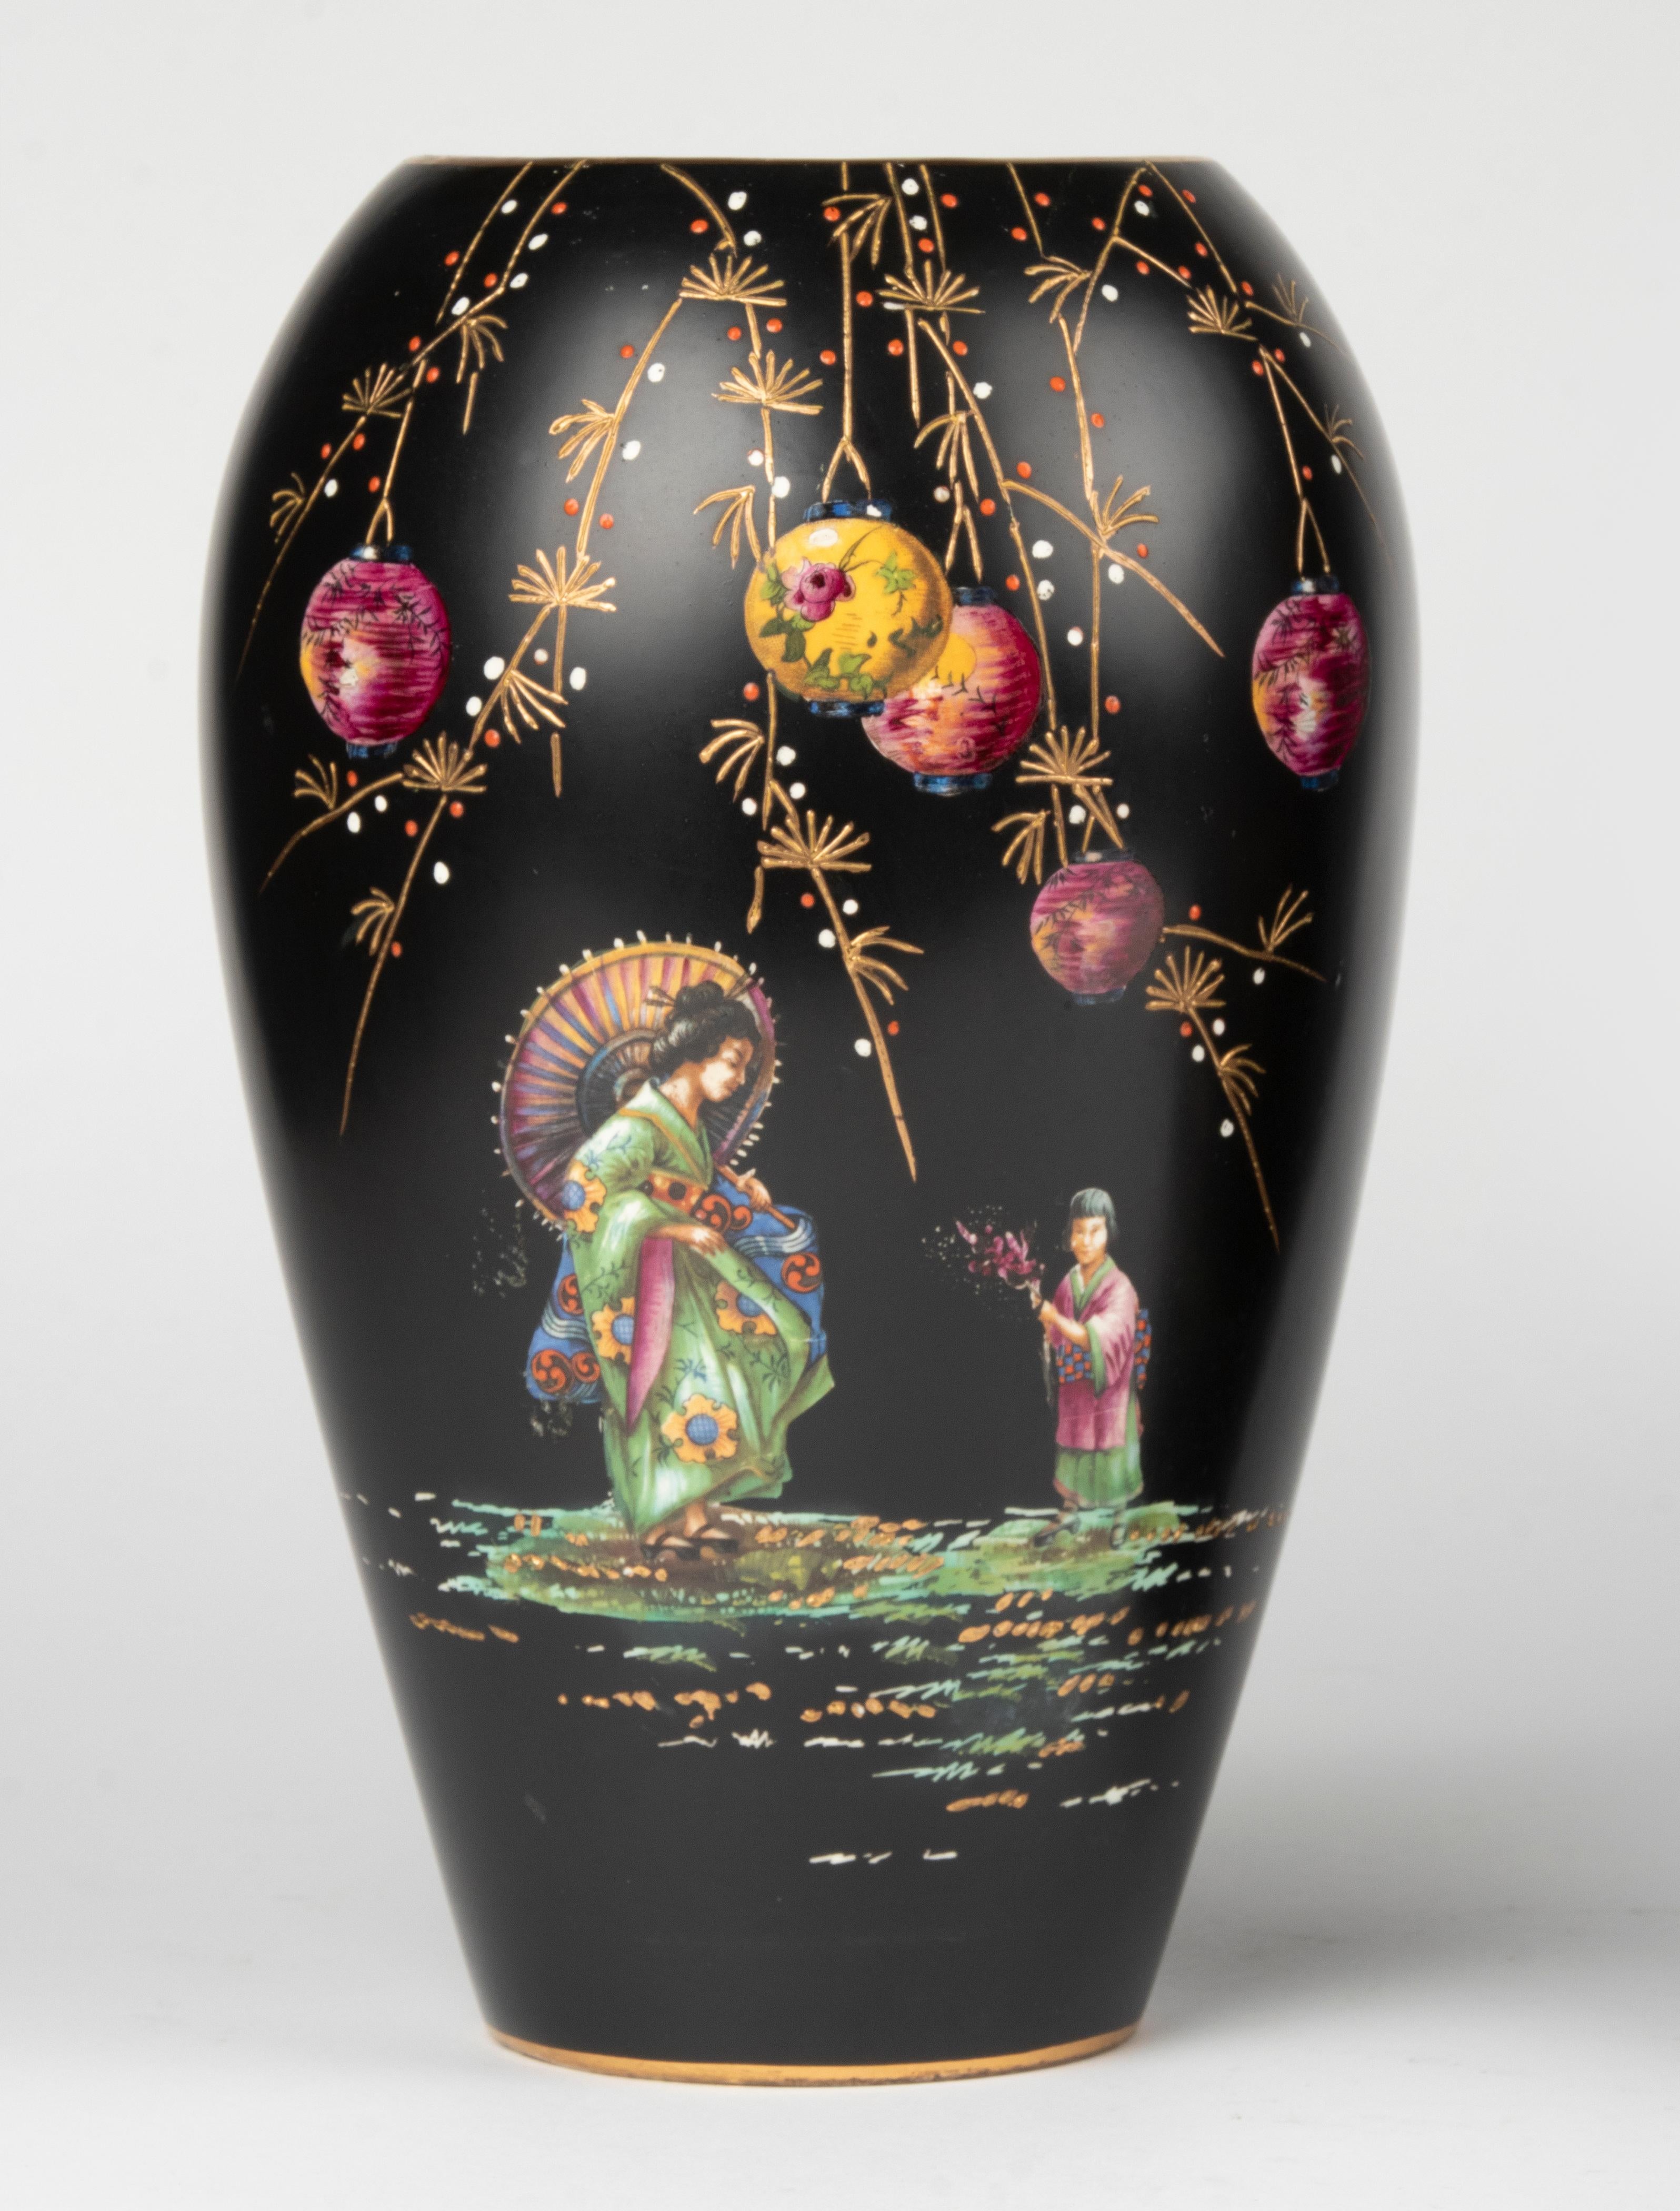 Une paire de vases anglais en céramique très décoratifs. Les vases présentent de superbes décorations de style chinoiserie sur fond noir. Les deux vases sont marqués, mais il s'agit d'une marque peu claire, de fabricant inconnu. Les vases datent